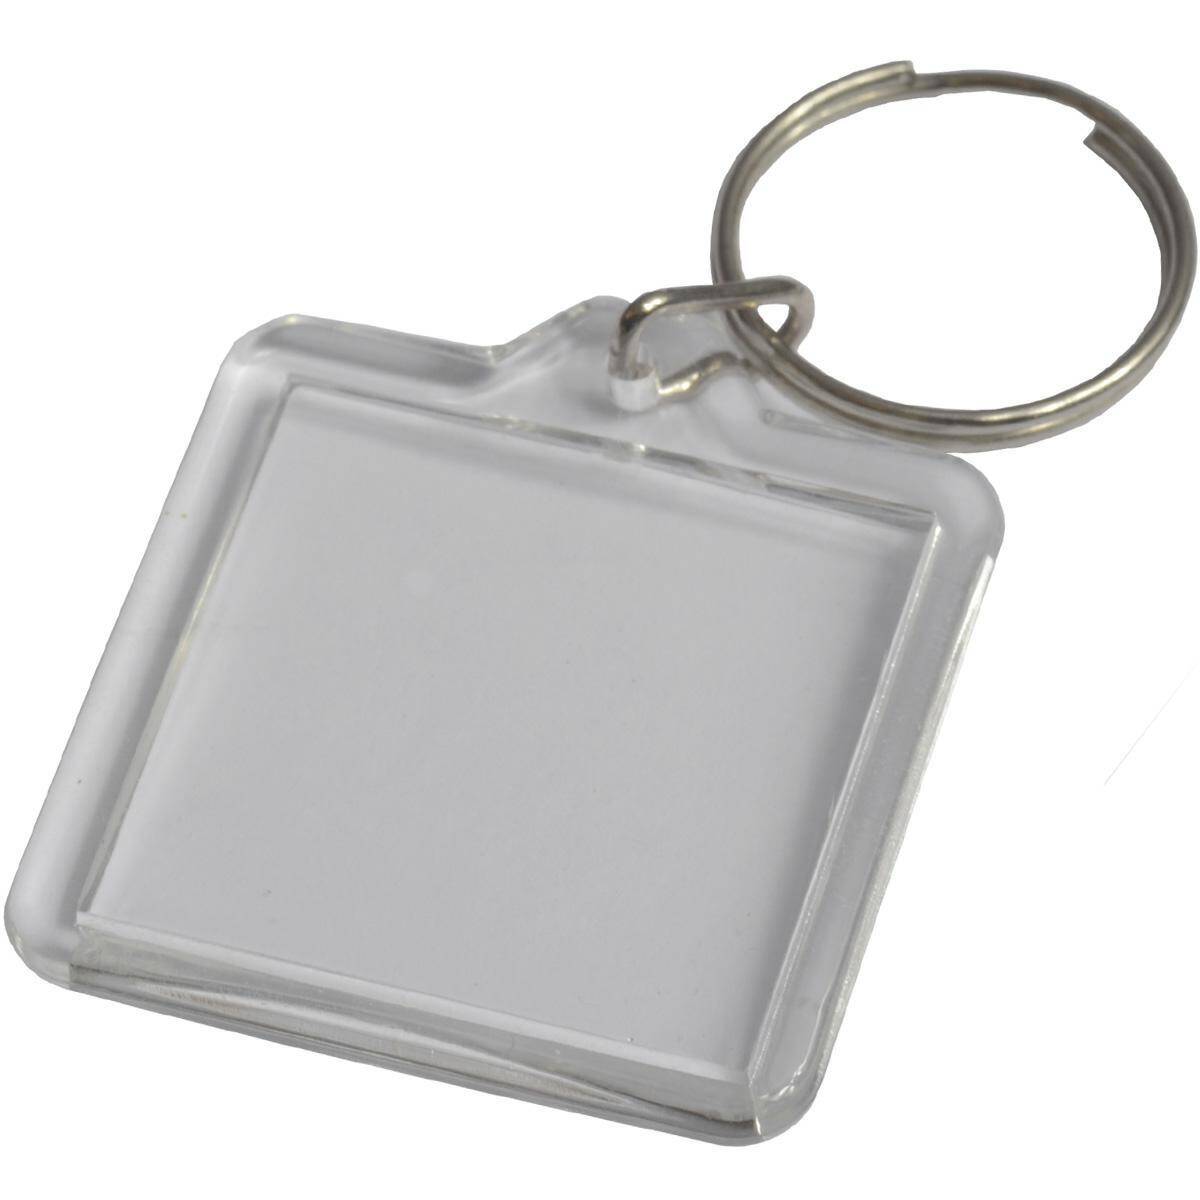 Acrylic keychain - 32mm x 33mm